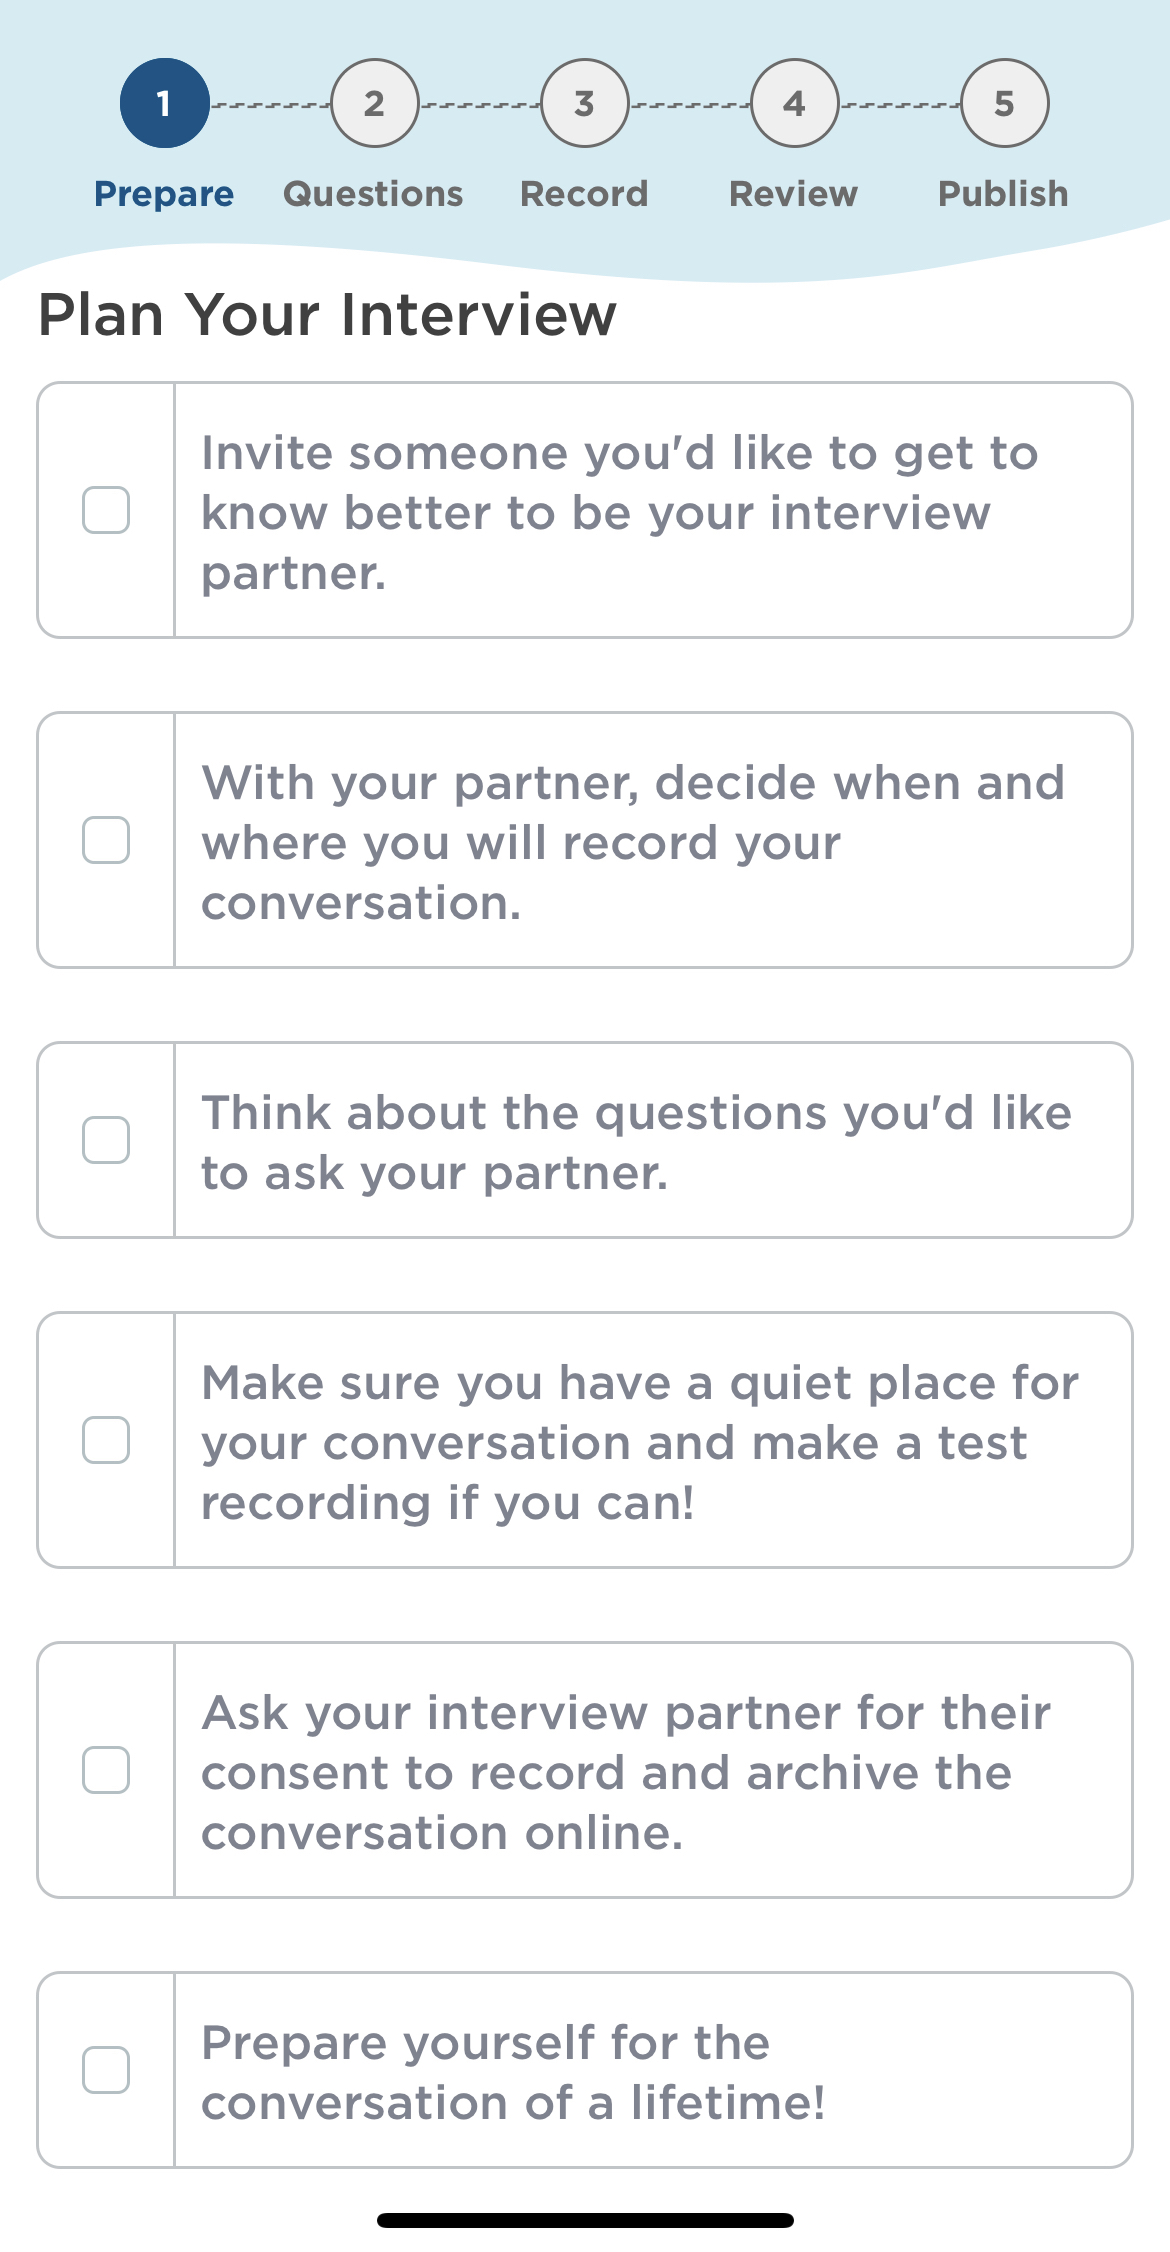 Plan_your_Interview_Checklist.jpeg